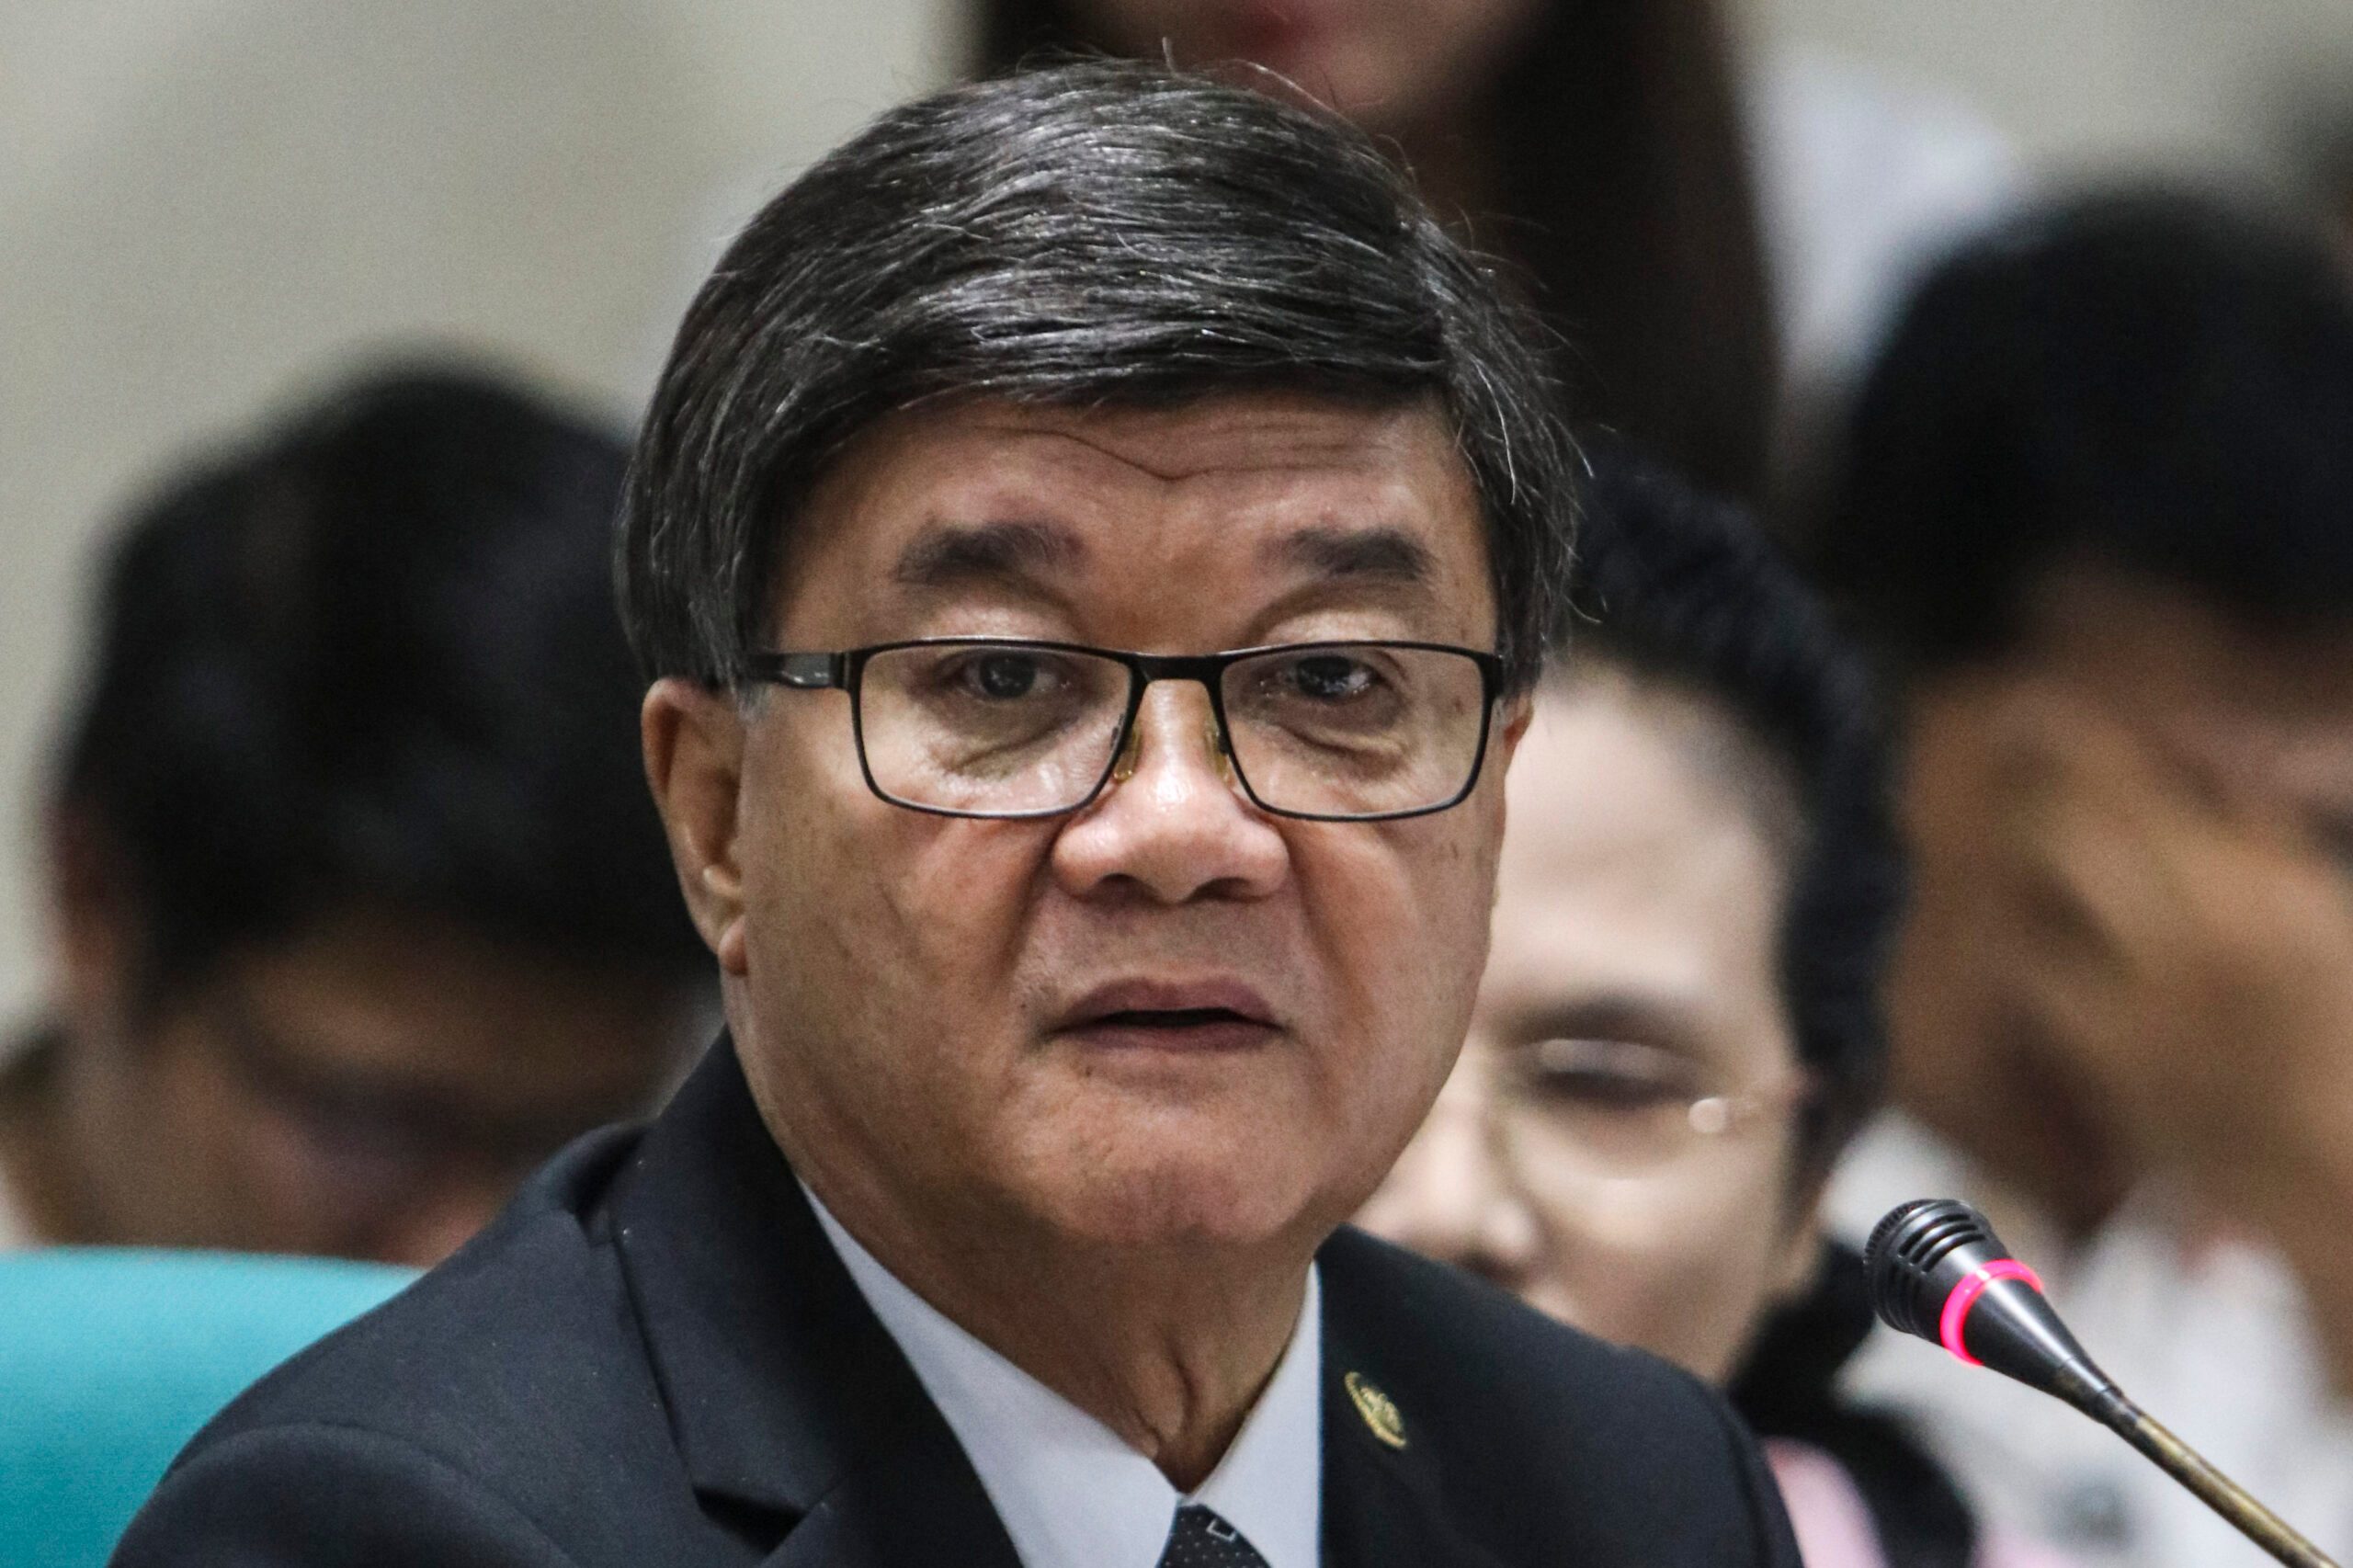 Aguirre diperiksa di Senat karena berita palsu